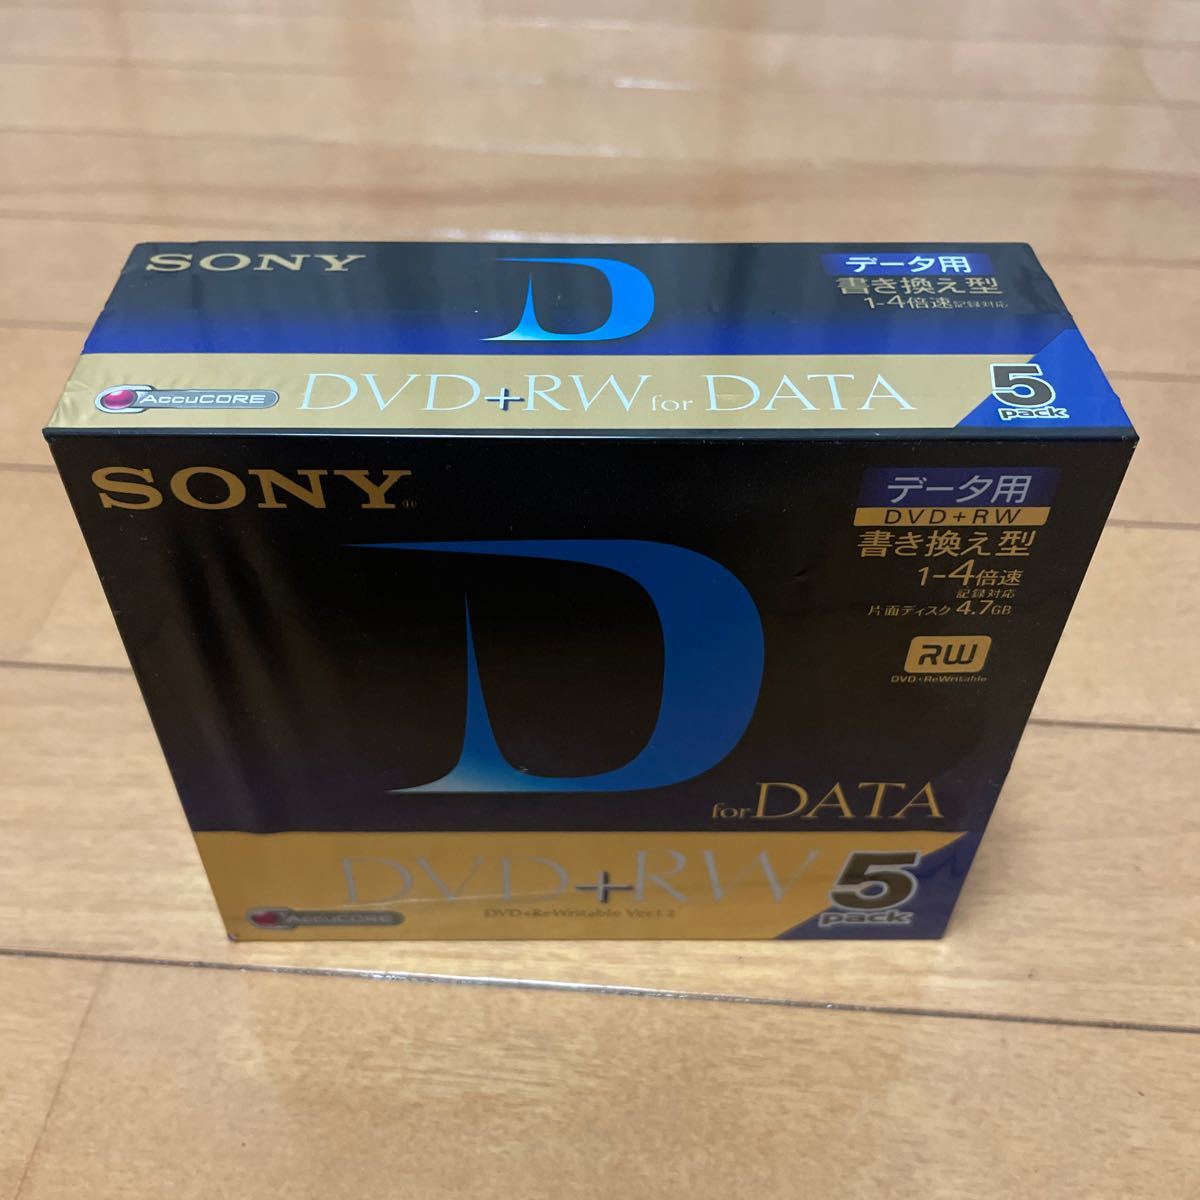 SONY DVDrw 5 упаковка 